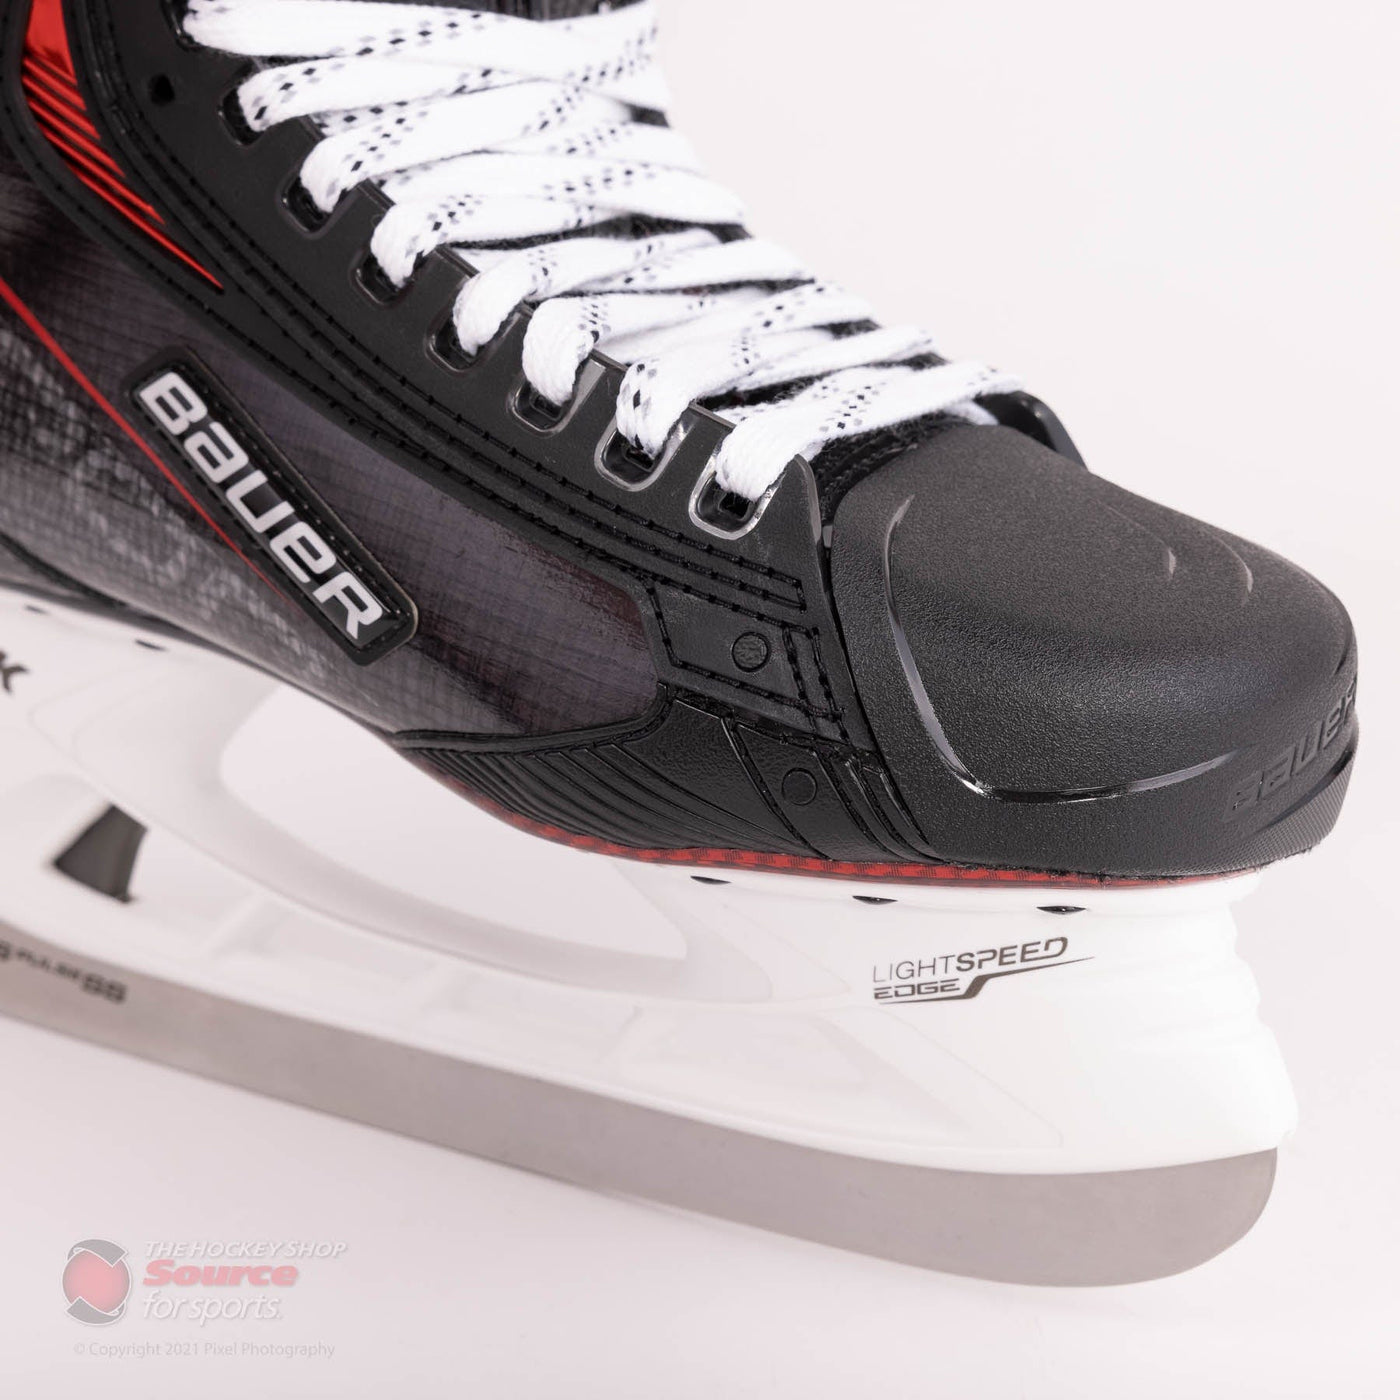 Bauer Vapor 3X Pro Senior Hockey Skates